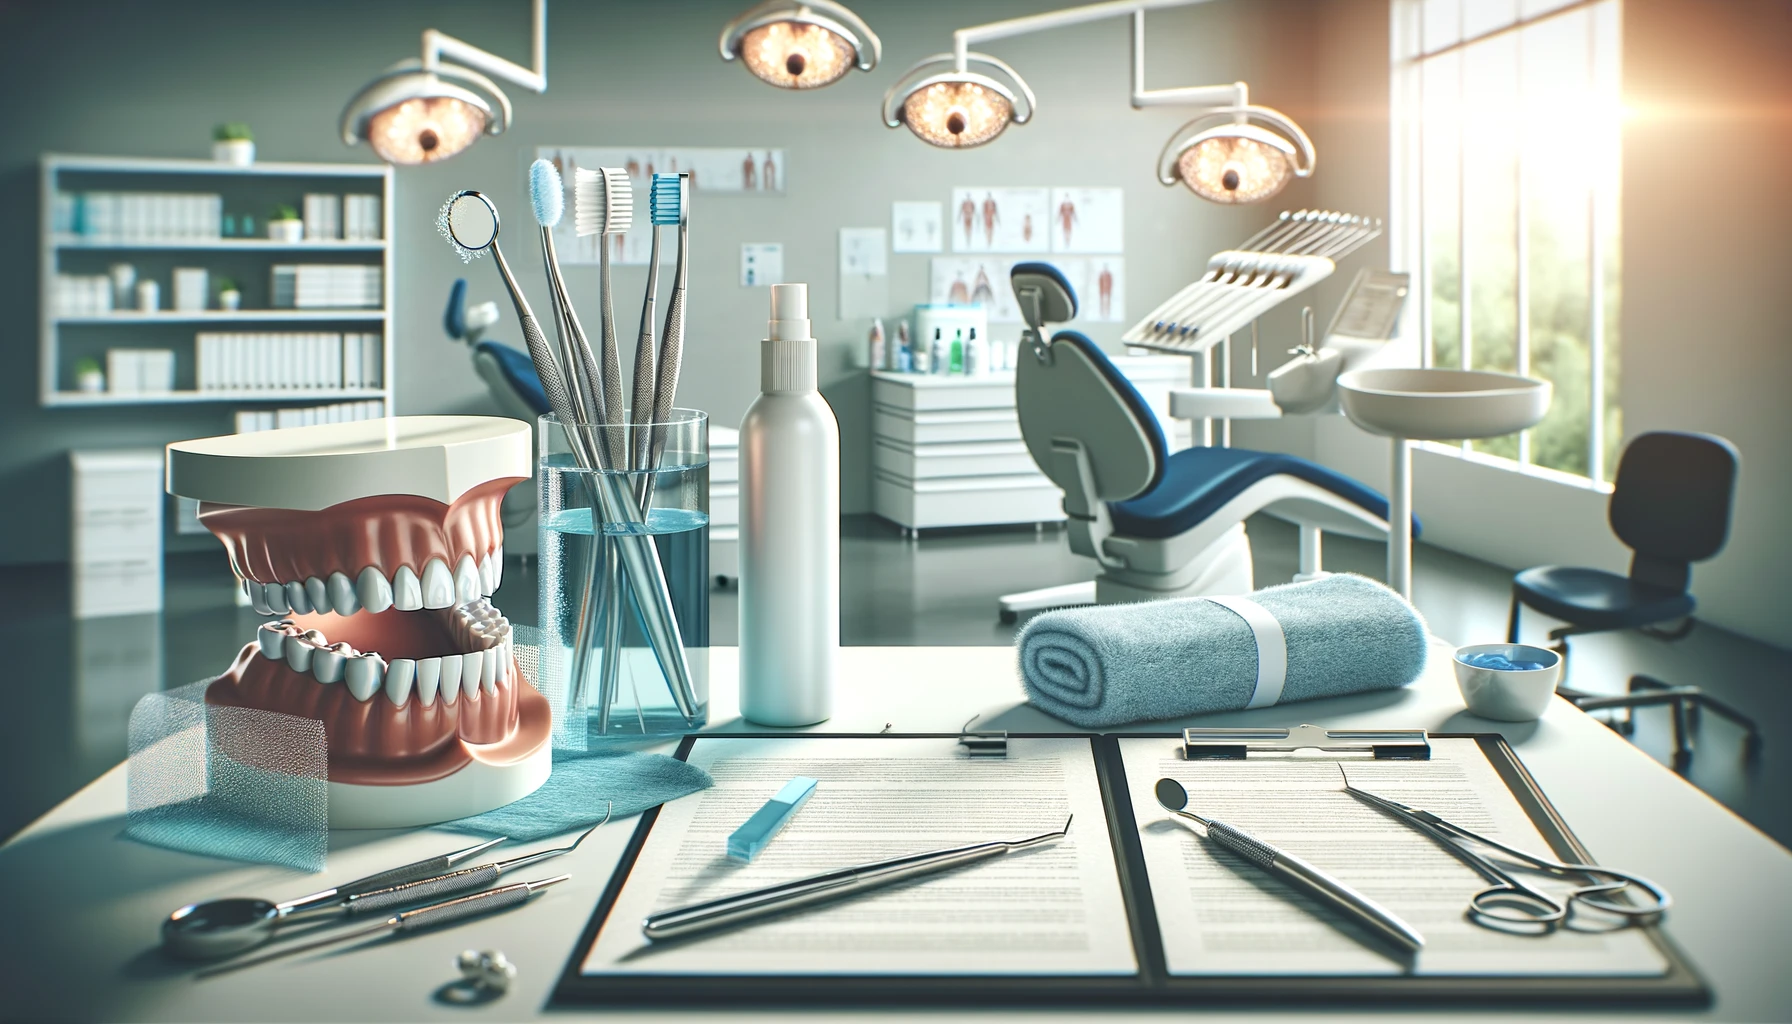 Bilde viser verktøy for tannhygiene i tannklinikk mot dårlig ånde